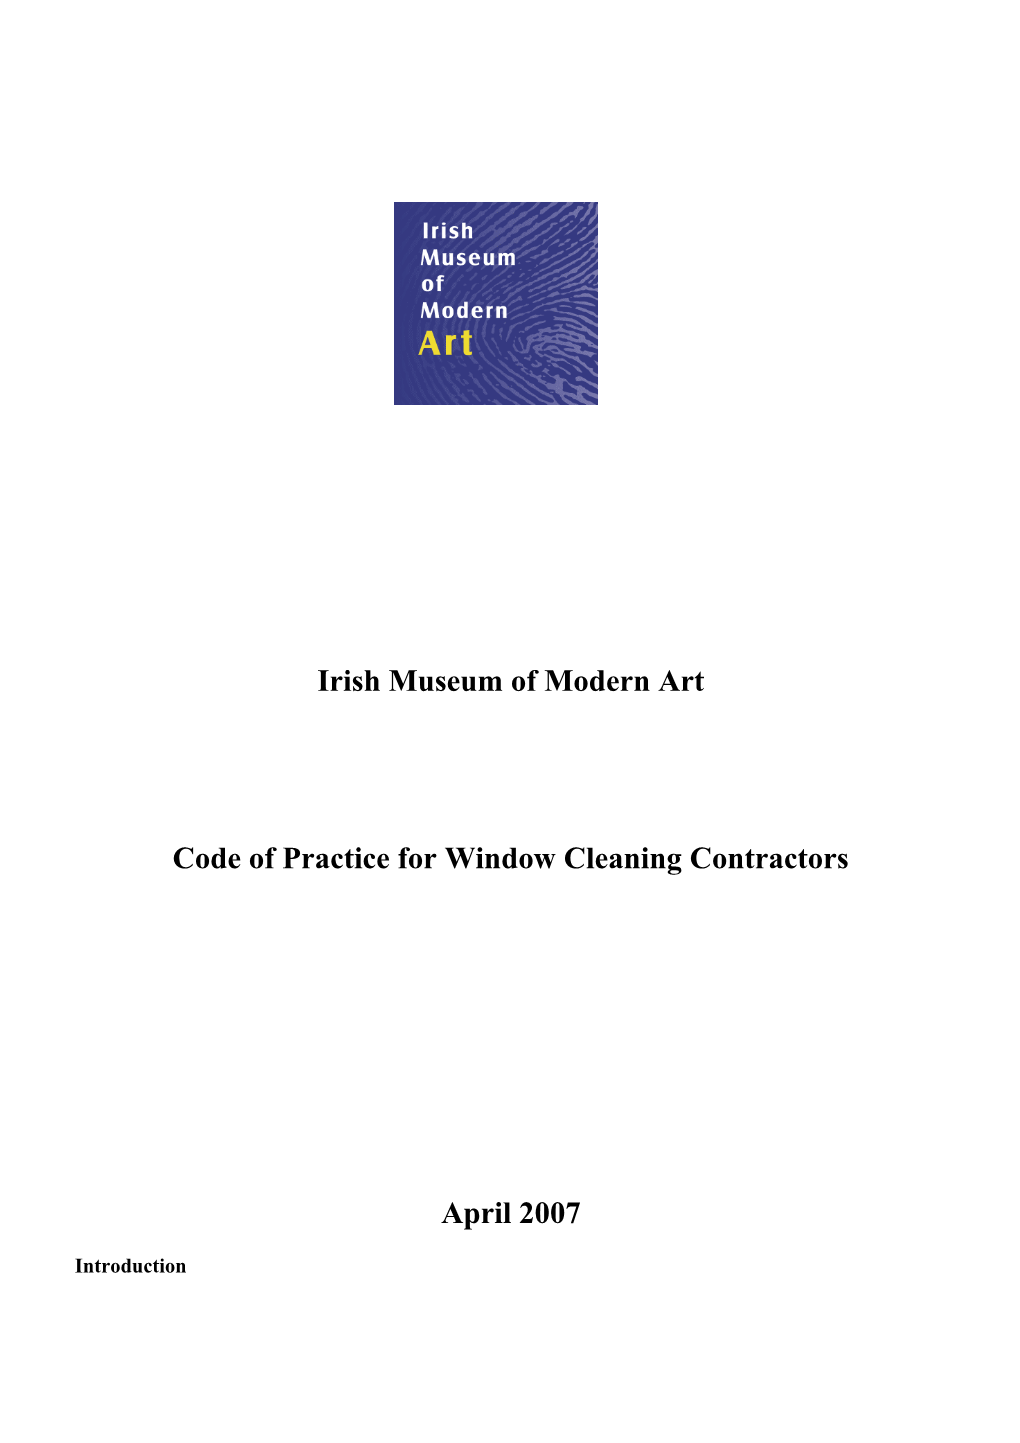 Code of Practice for Window Cleaning Contractors